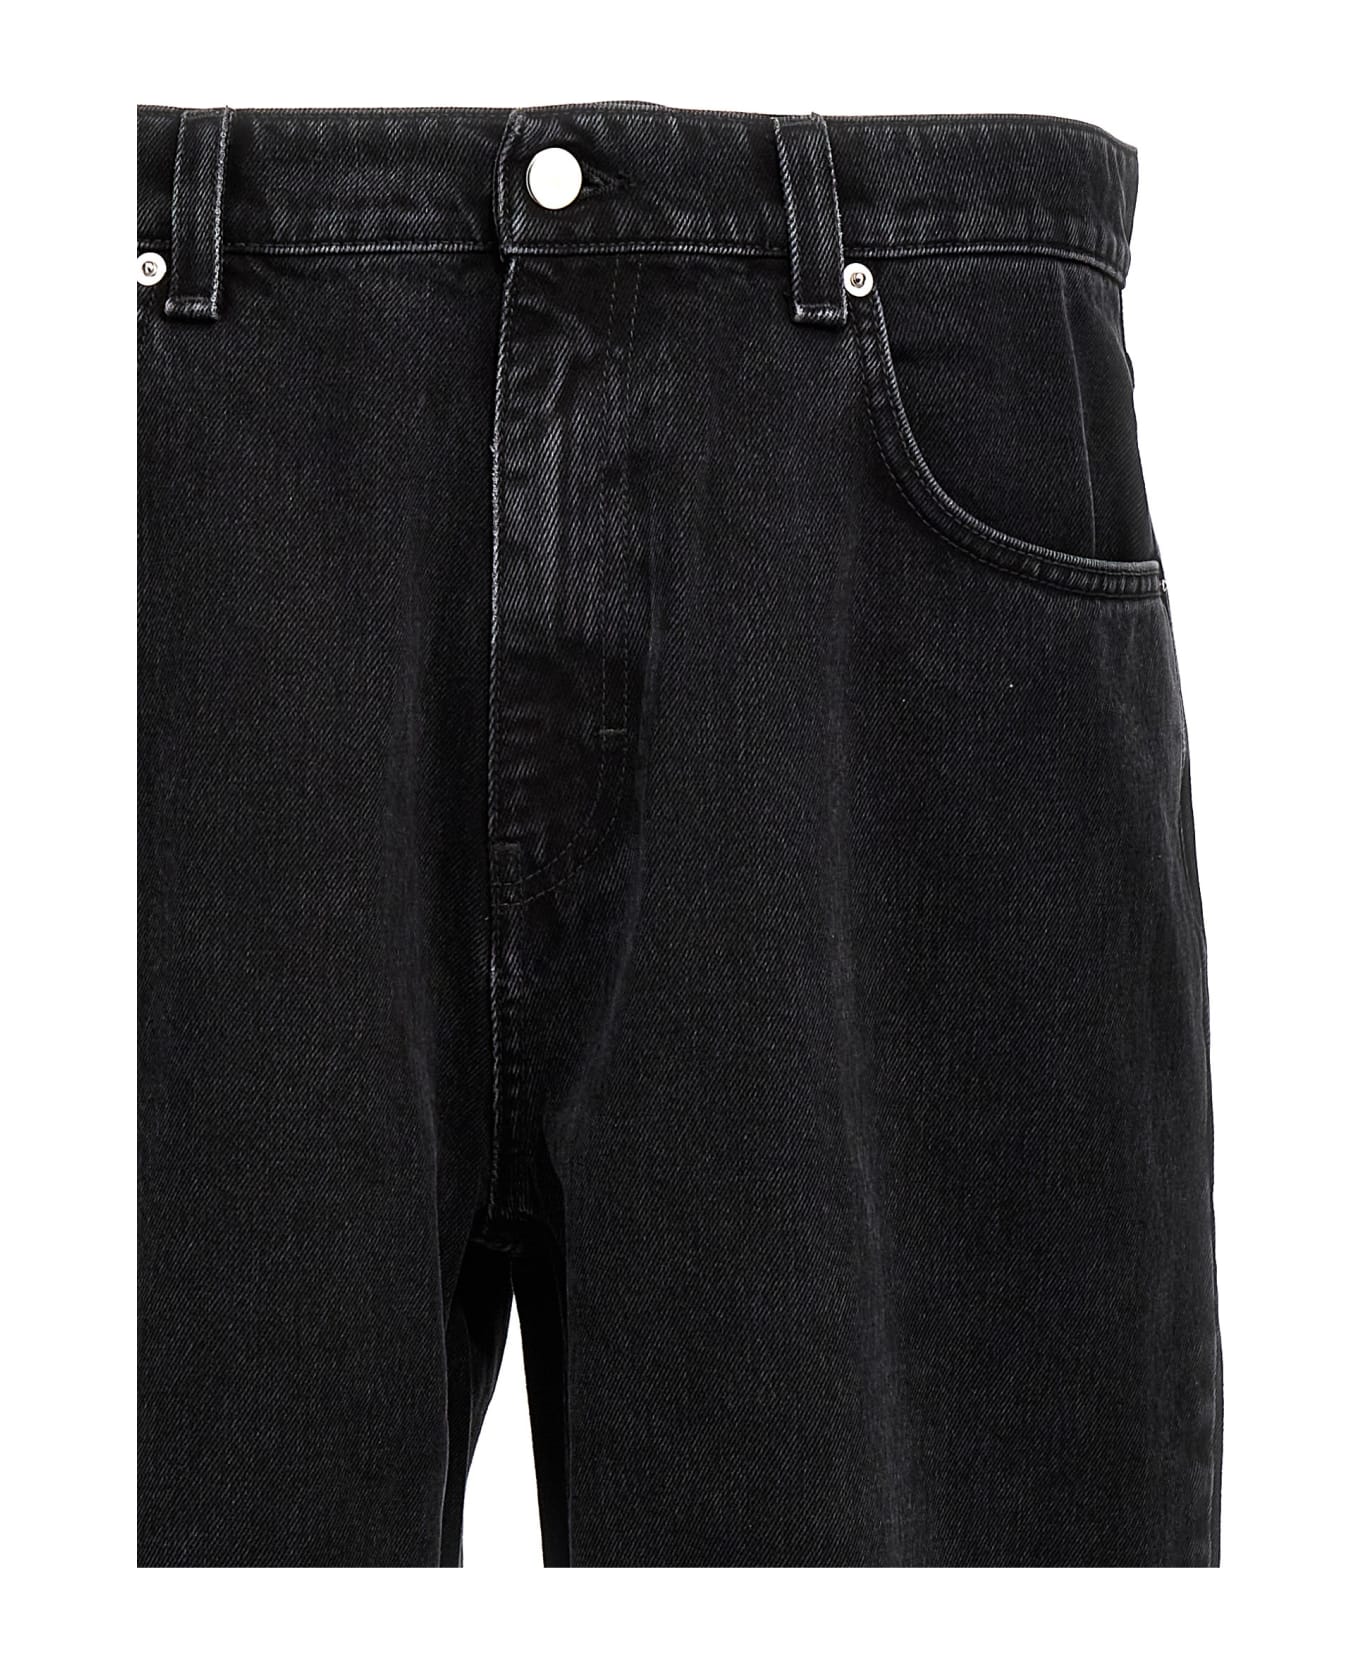 Axel Arigato 'zine' Jeans - Black  